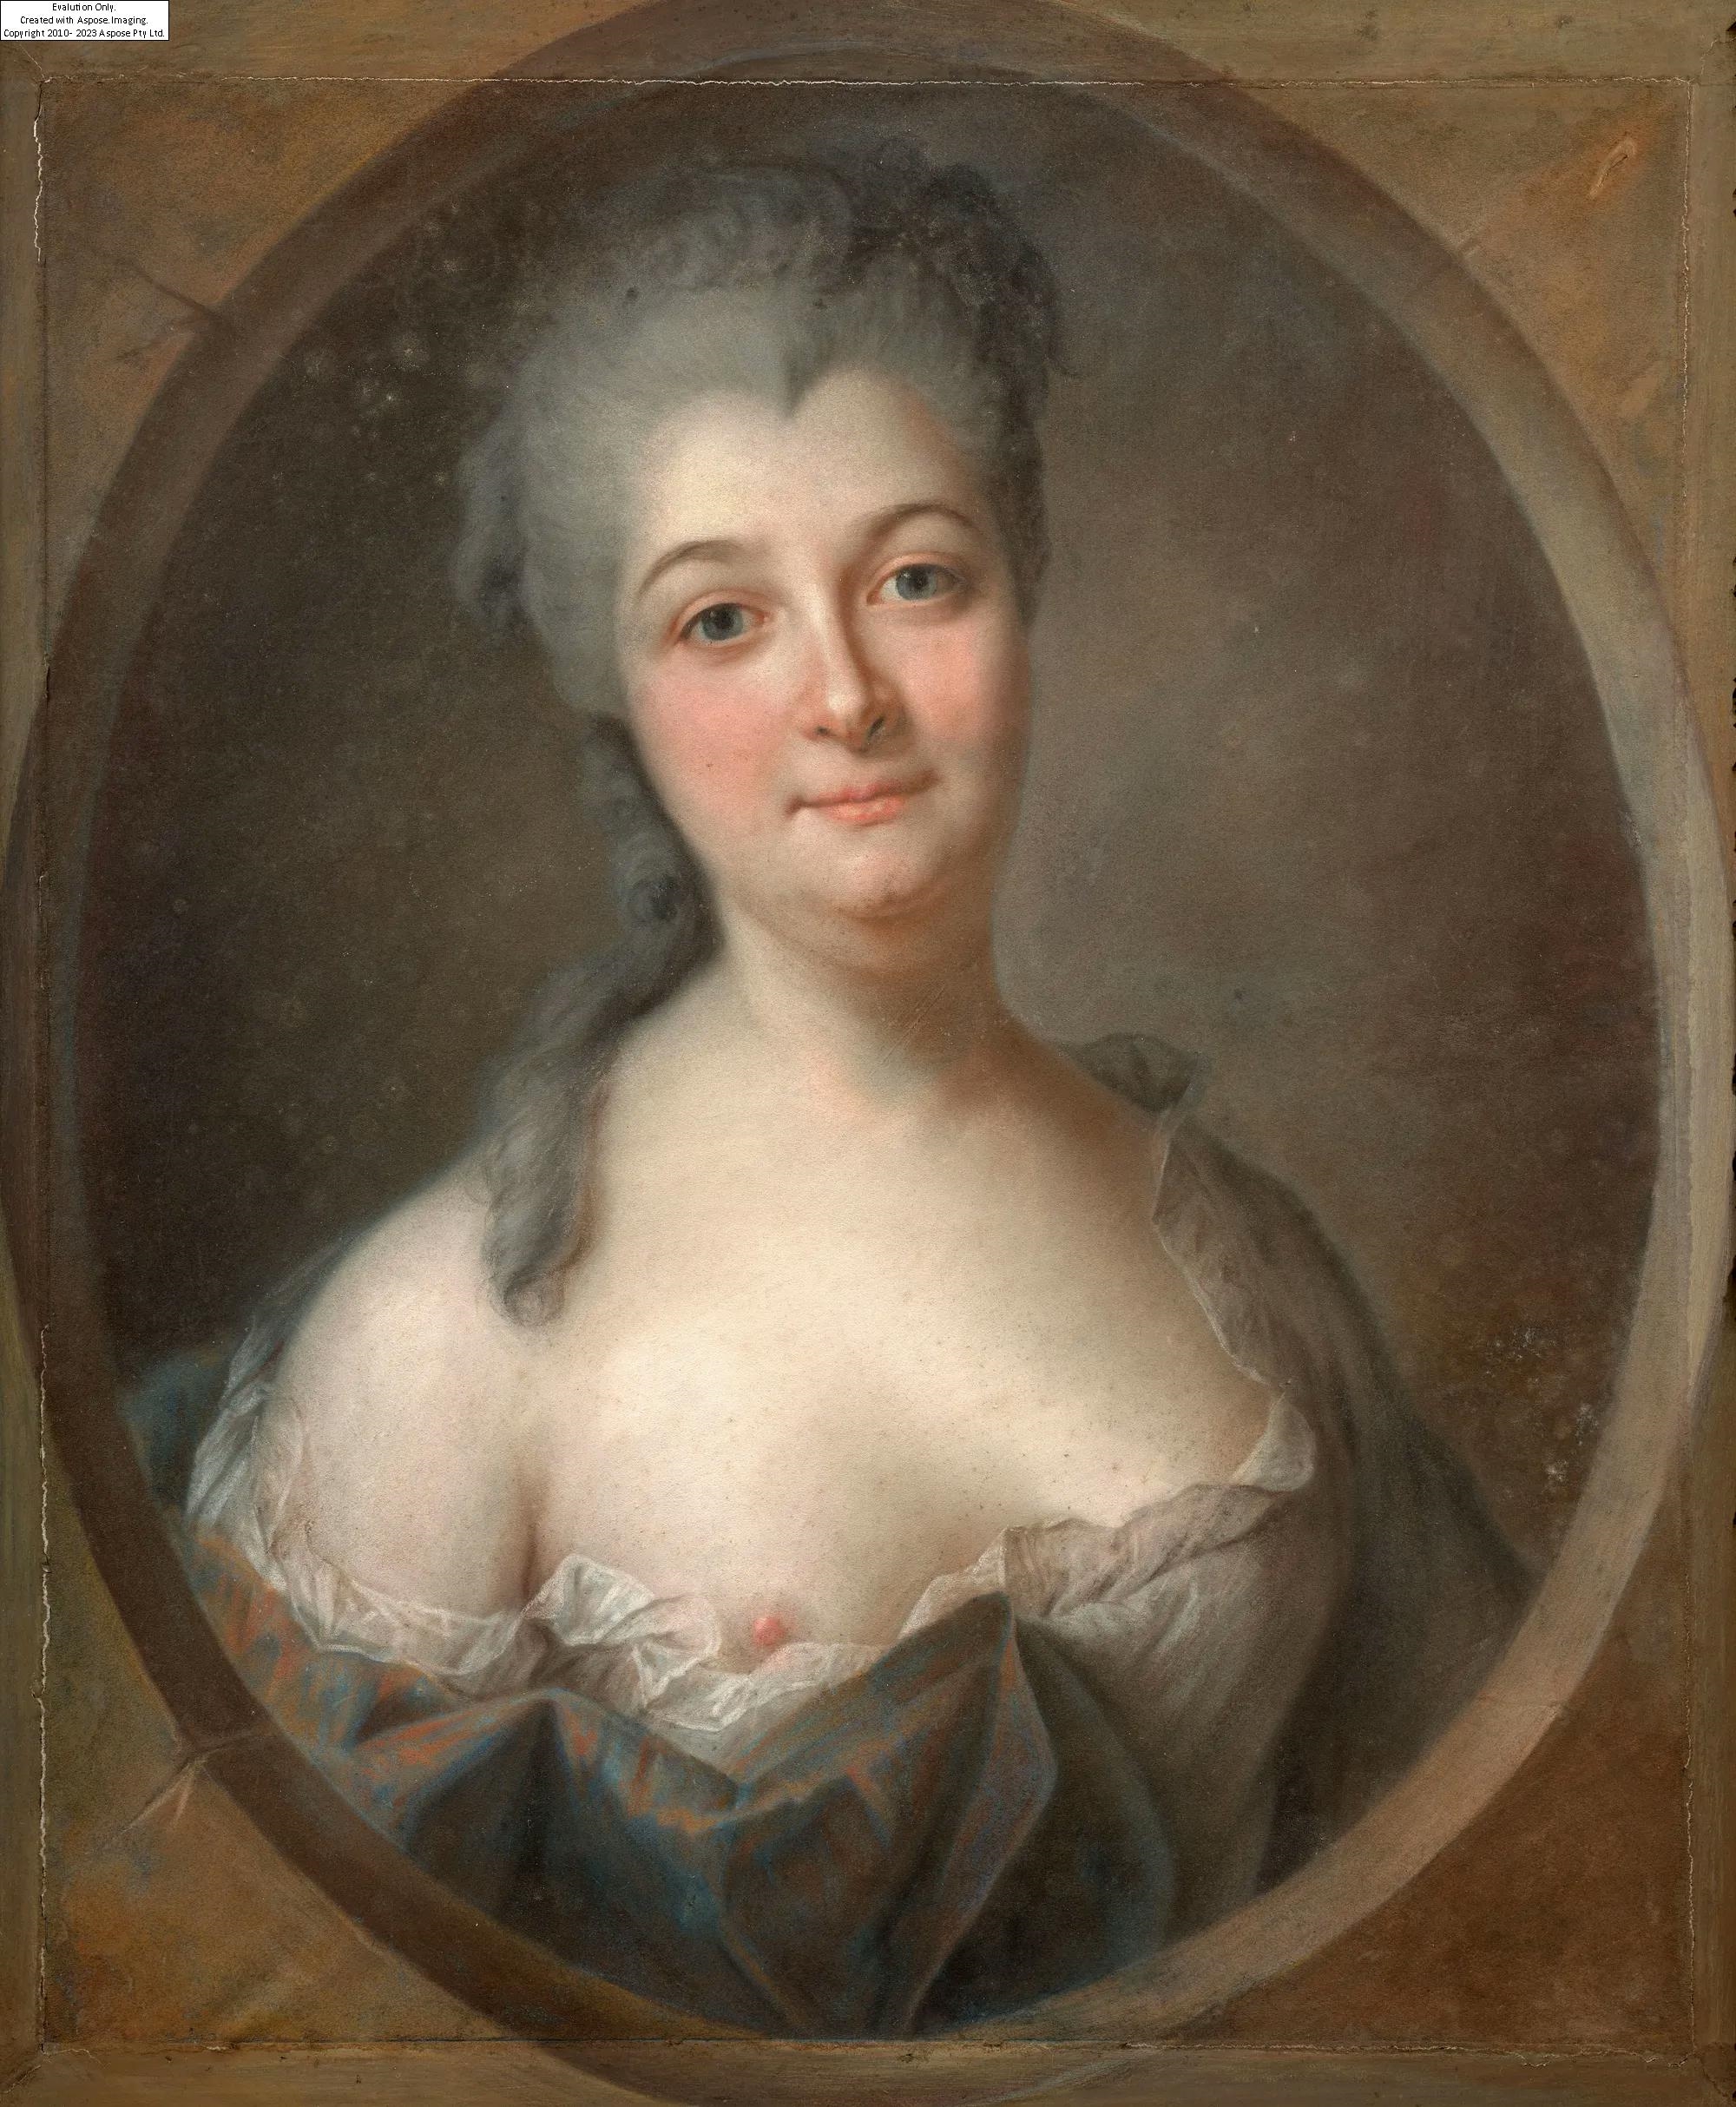 Portrait de la baronne Dietrich, comtesse du Ban de la Roche, née Amélie-Anne-Dorothée Hermani (1729-1766) dans un ovale feint by Franz Bernhard Frey